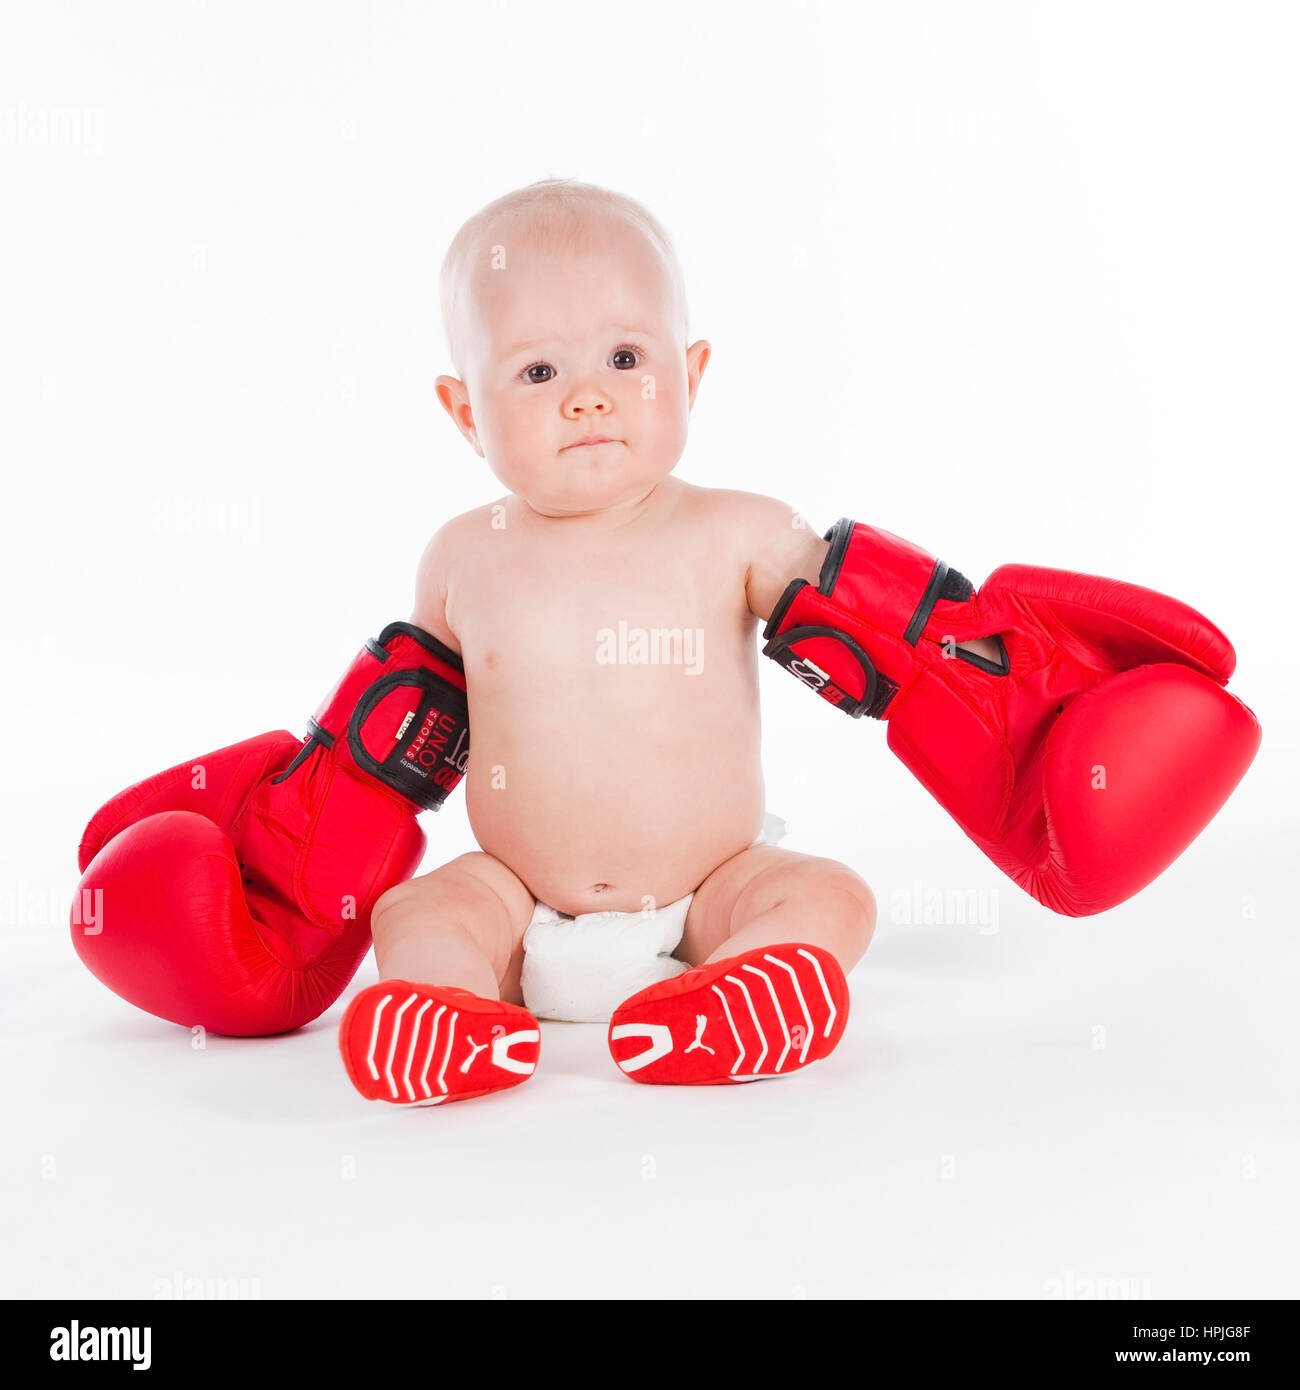 Model Release, Baby, 10 Monate, Mit Boxhandschuhen - Baby mit Boxhandschuhen  Stockfotografie - Alamy